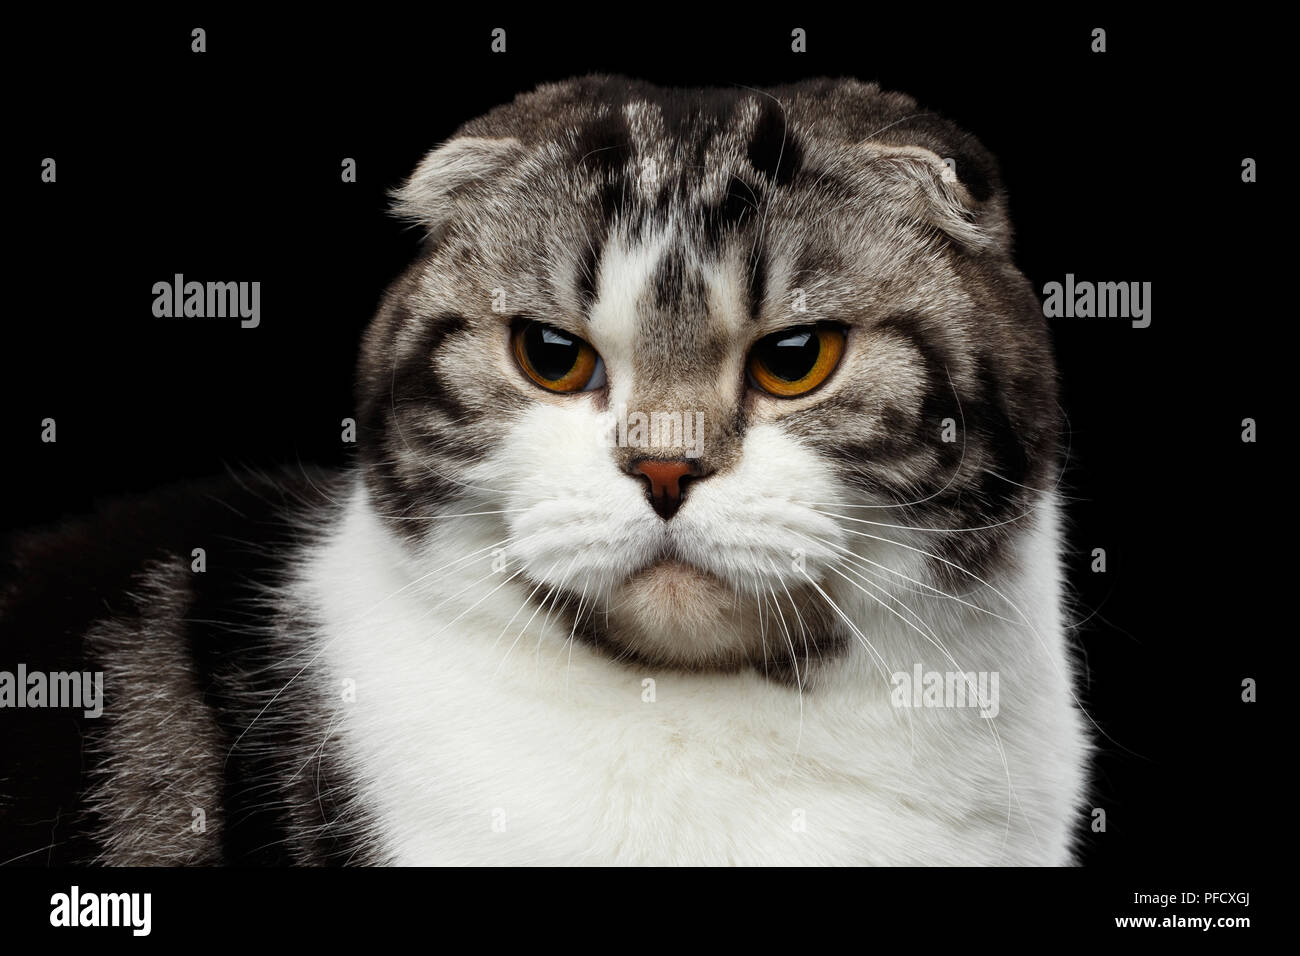 Close-up Portrait von grumpy Katze von Scottish Fold Rasse auf isolierten  schwarzen Hintergrund, kleine Ohren und runder Kopf Stockfotografie - Alamy